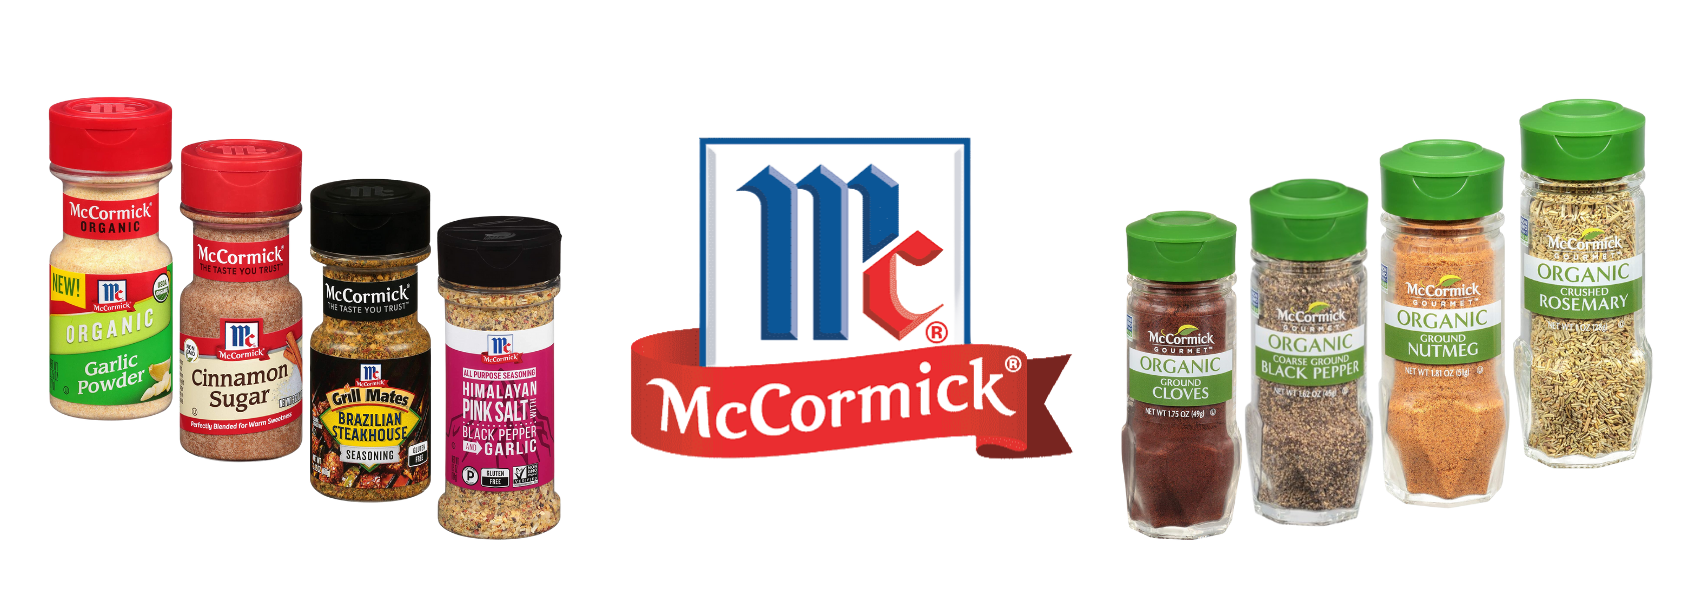 McCormick Italian Herb Seasoning Grinder, 0.77 oz Mixed Spices & Seasonings